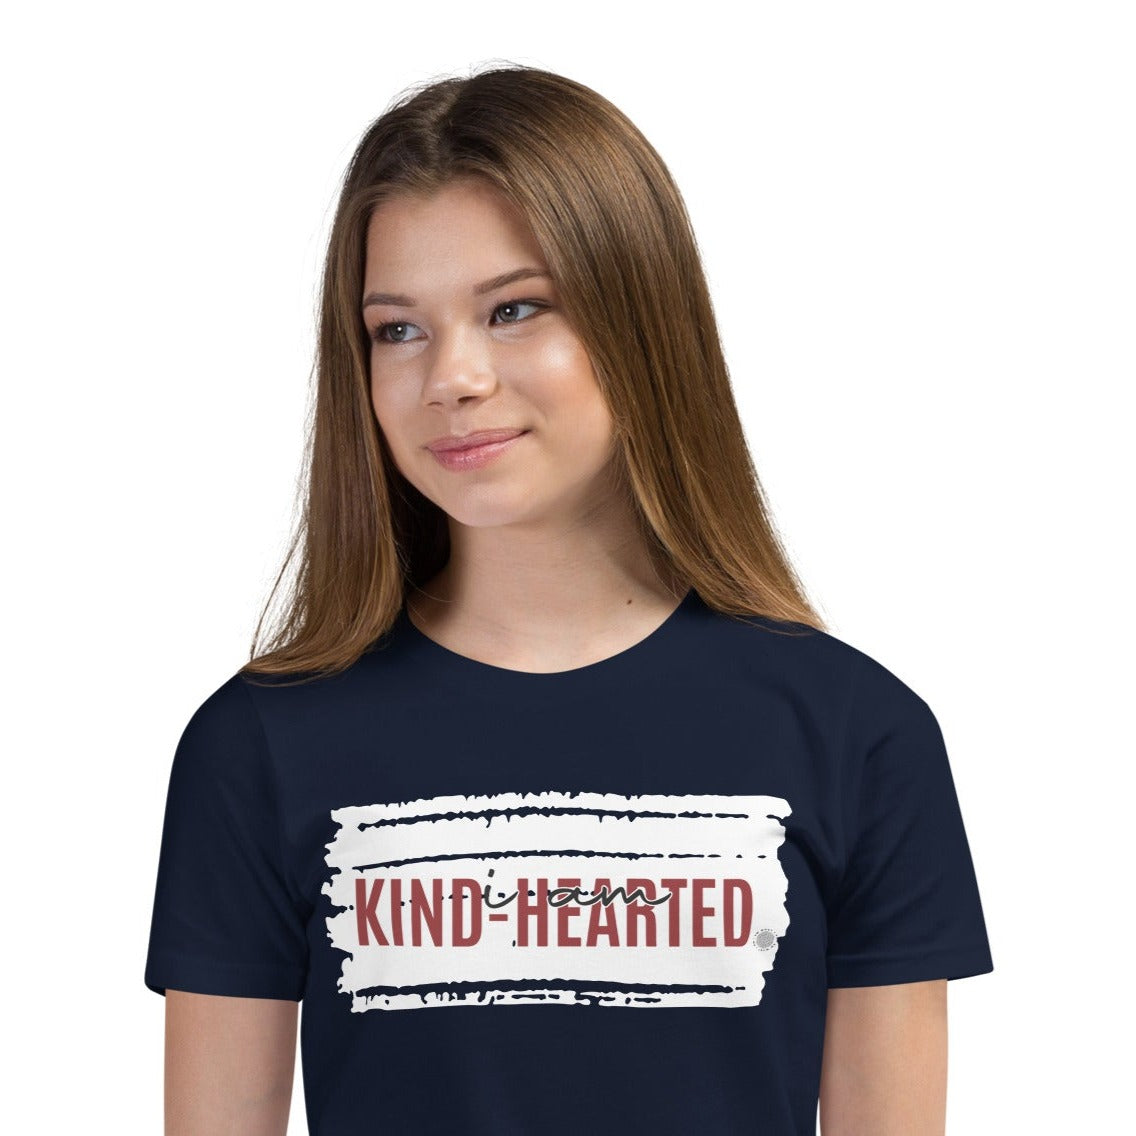 I Am Kind-Hearted Youth T-Shirt